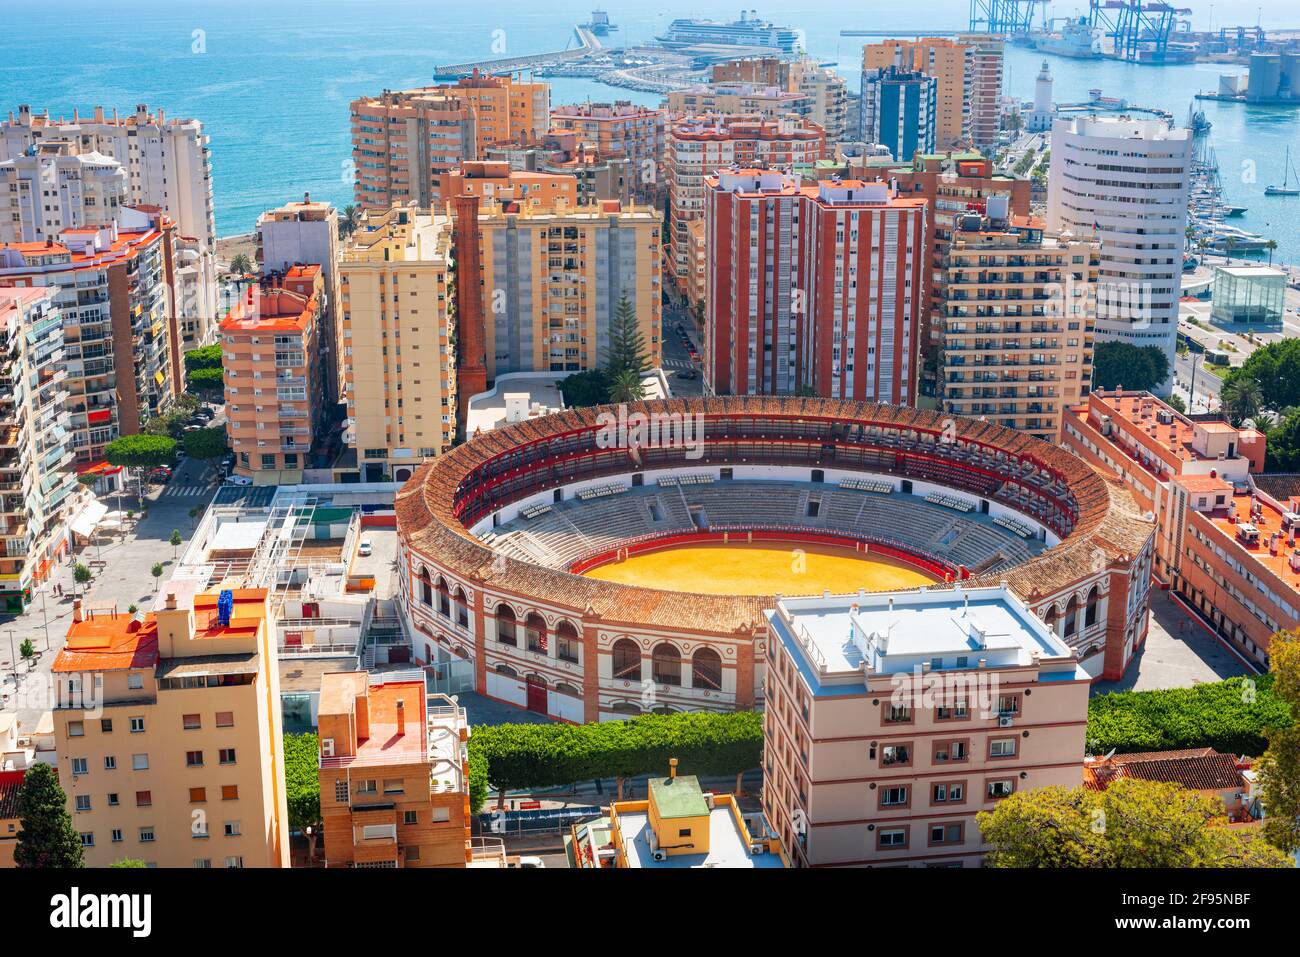 Malaga, Espagne, vue sur la mer Méditerranée dans l'après-midi. Banque D'Images